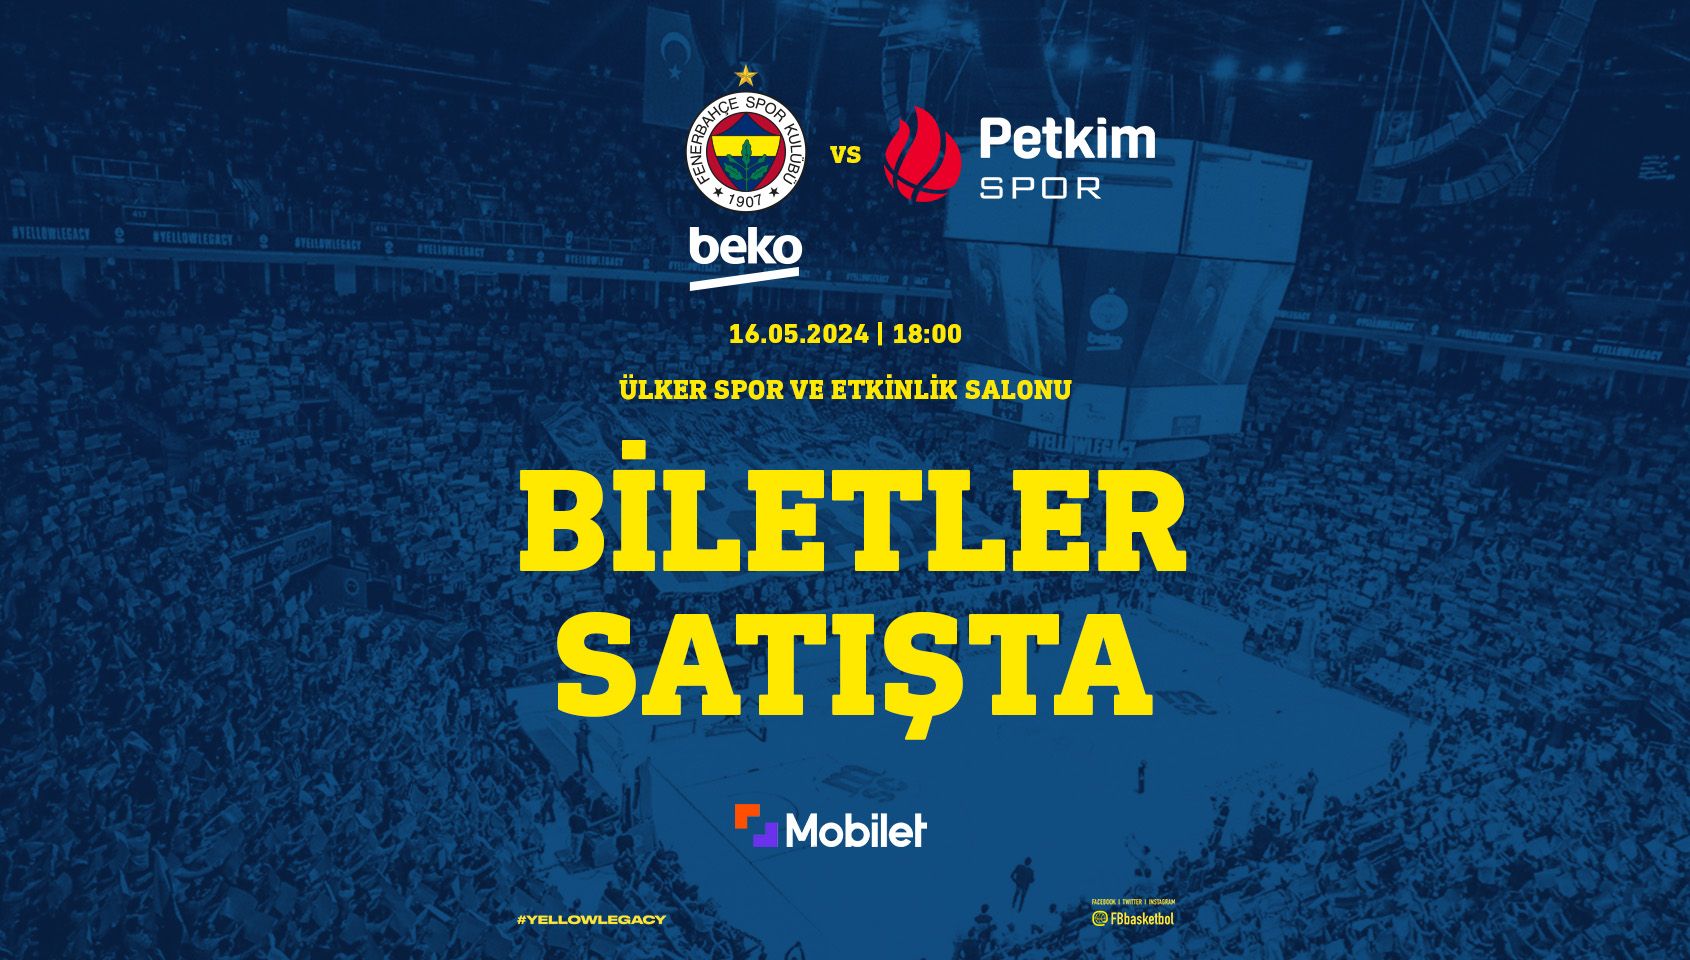 Fenerbahçe Beko–Aliağa Petkimspor - Ülker Spor ve Etkinlik Salonu - İstanbul